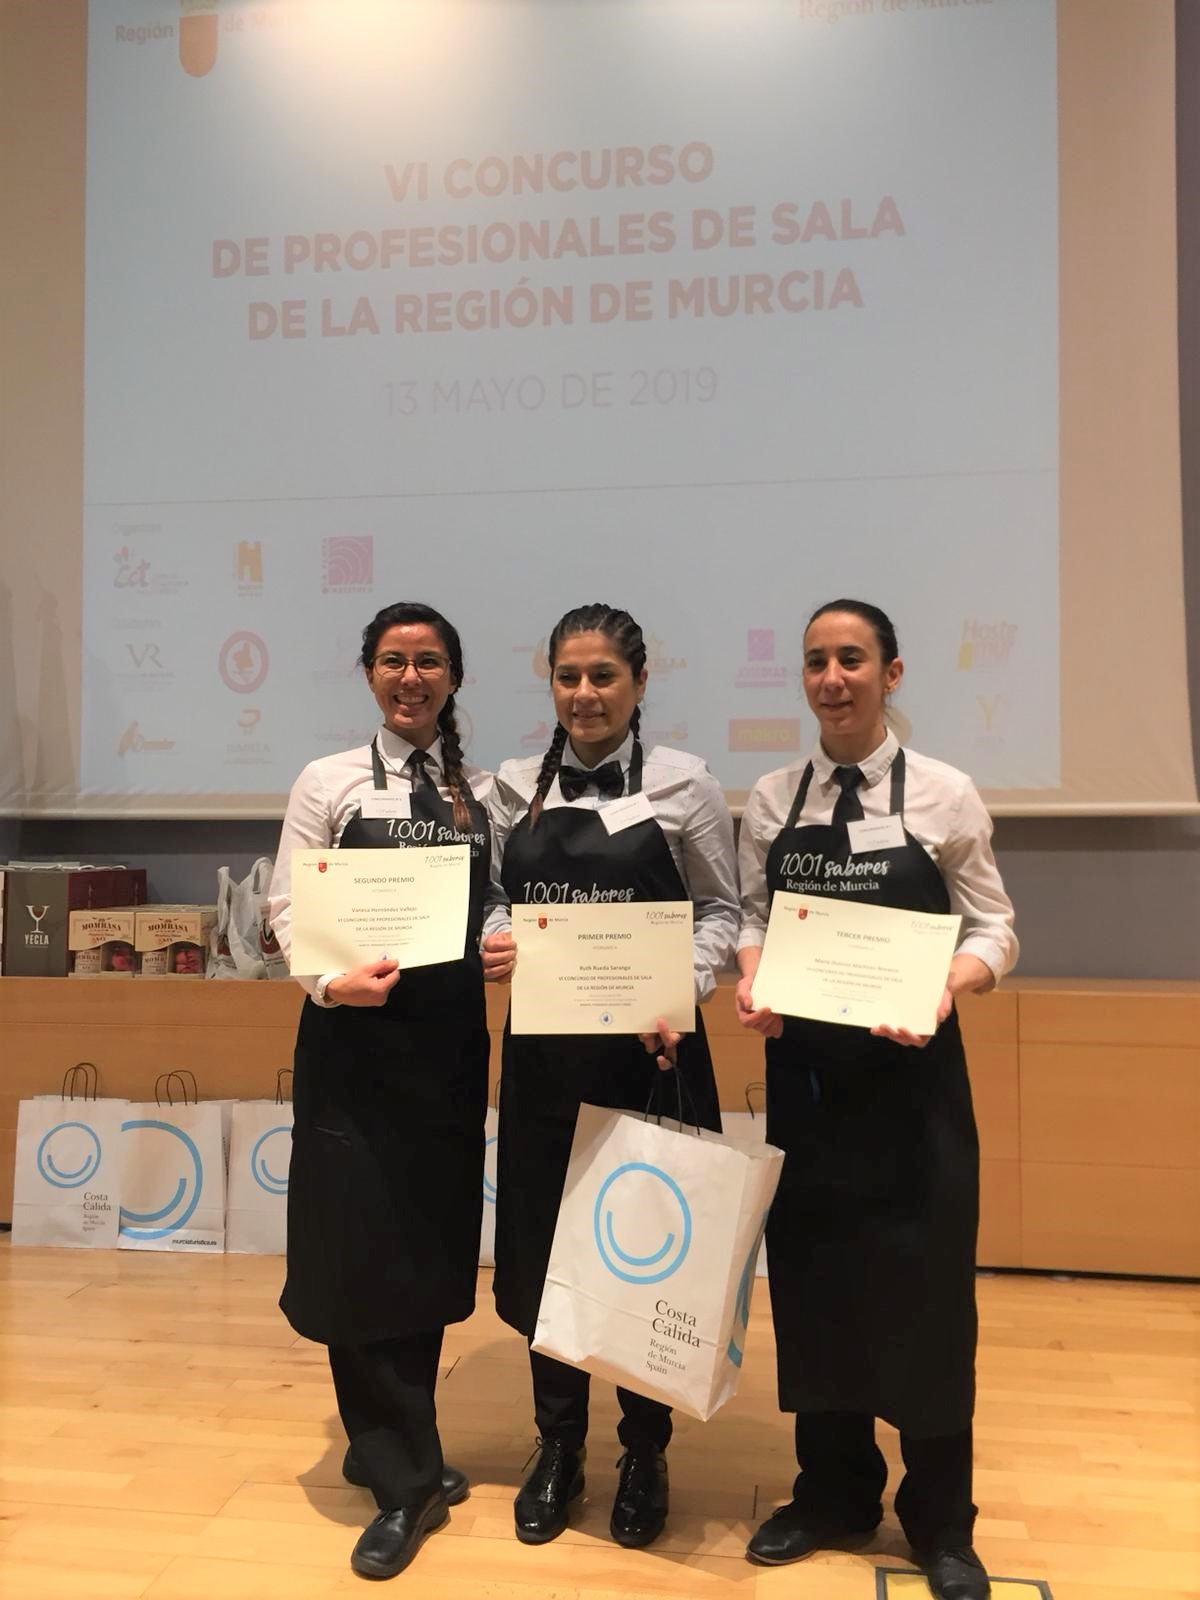 Ganadores del VI Concurso de profesionales de sala de la Región de Murcia